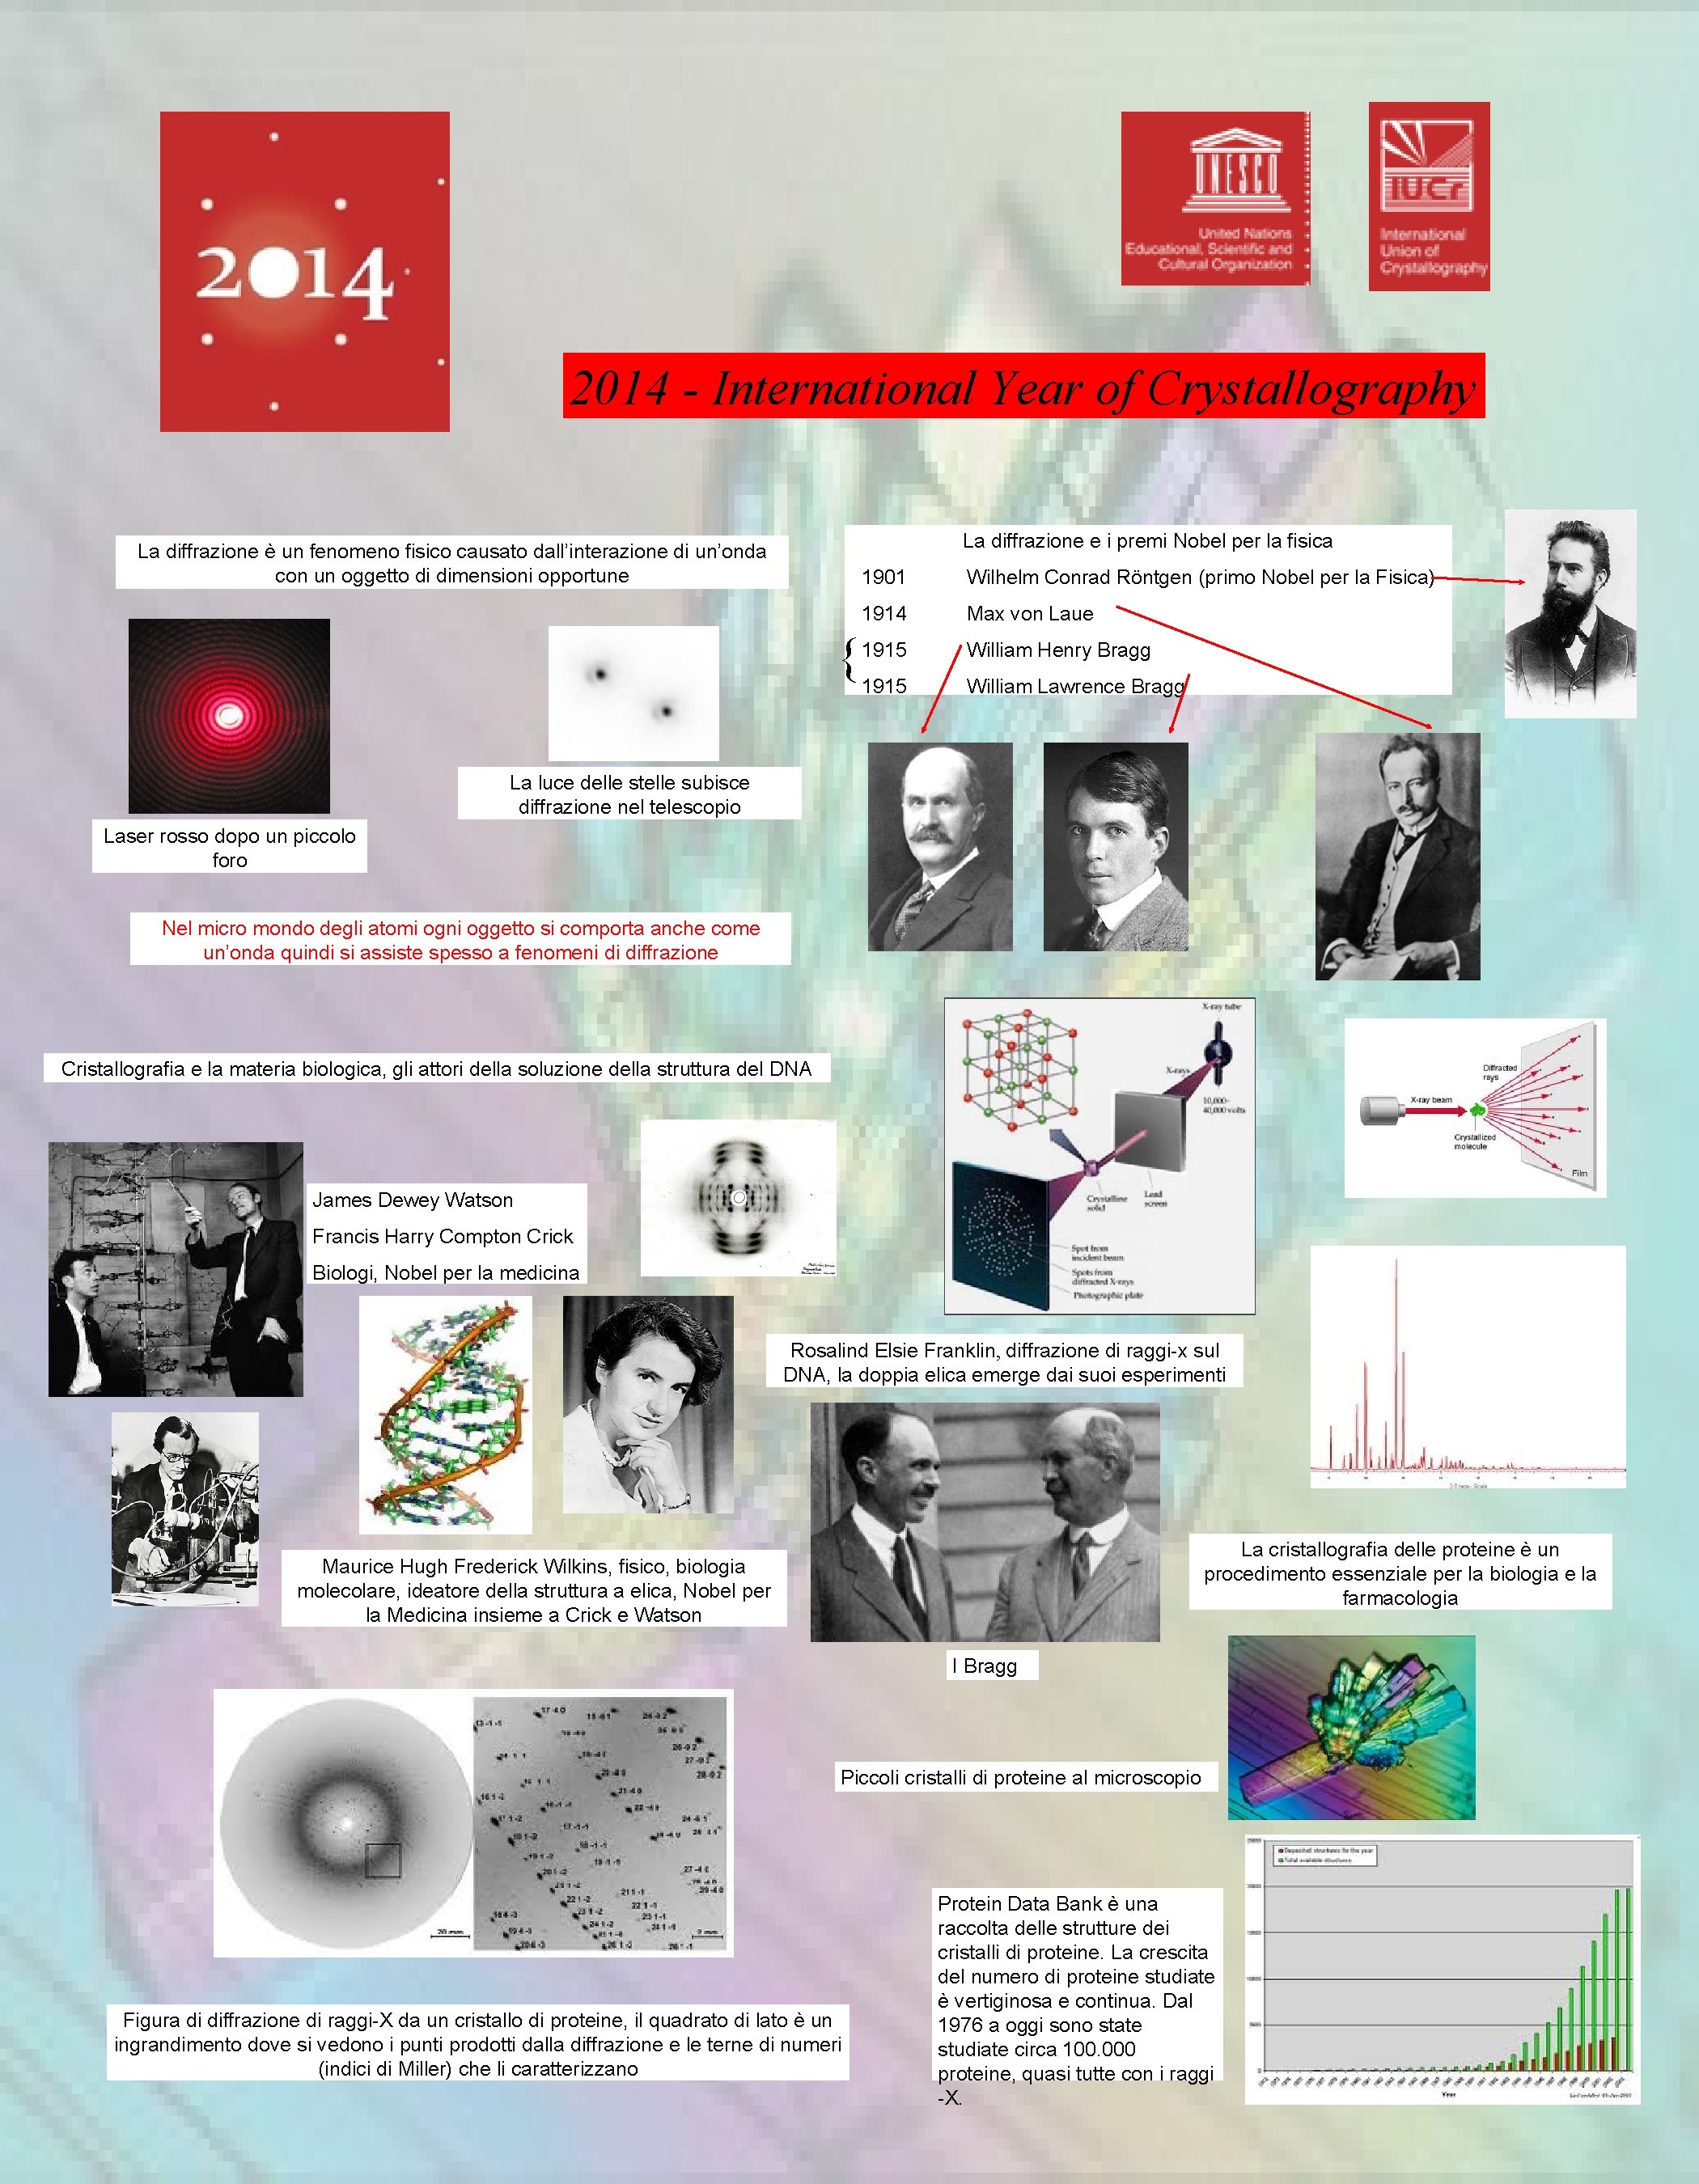 2014 - International Year of Crystallography La diffrazione e i premi Nobel per la